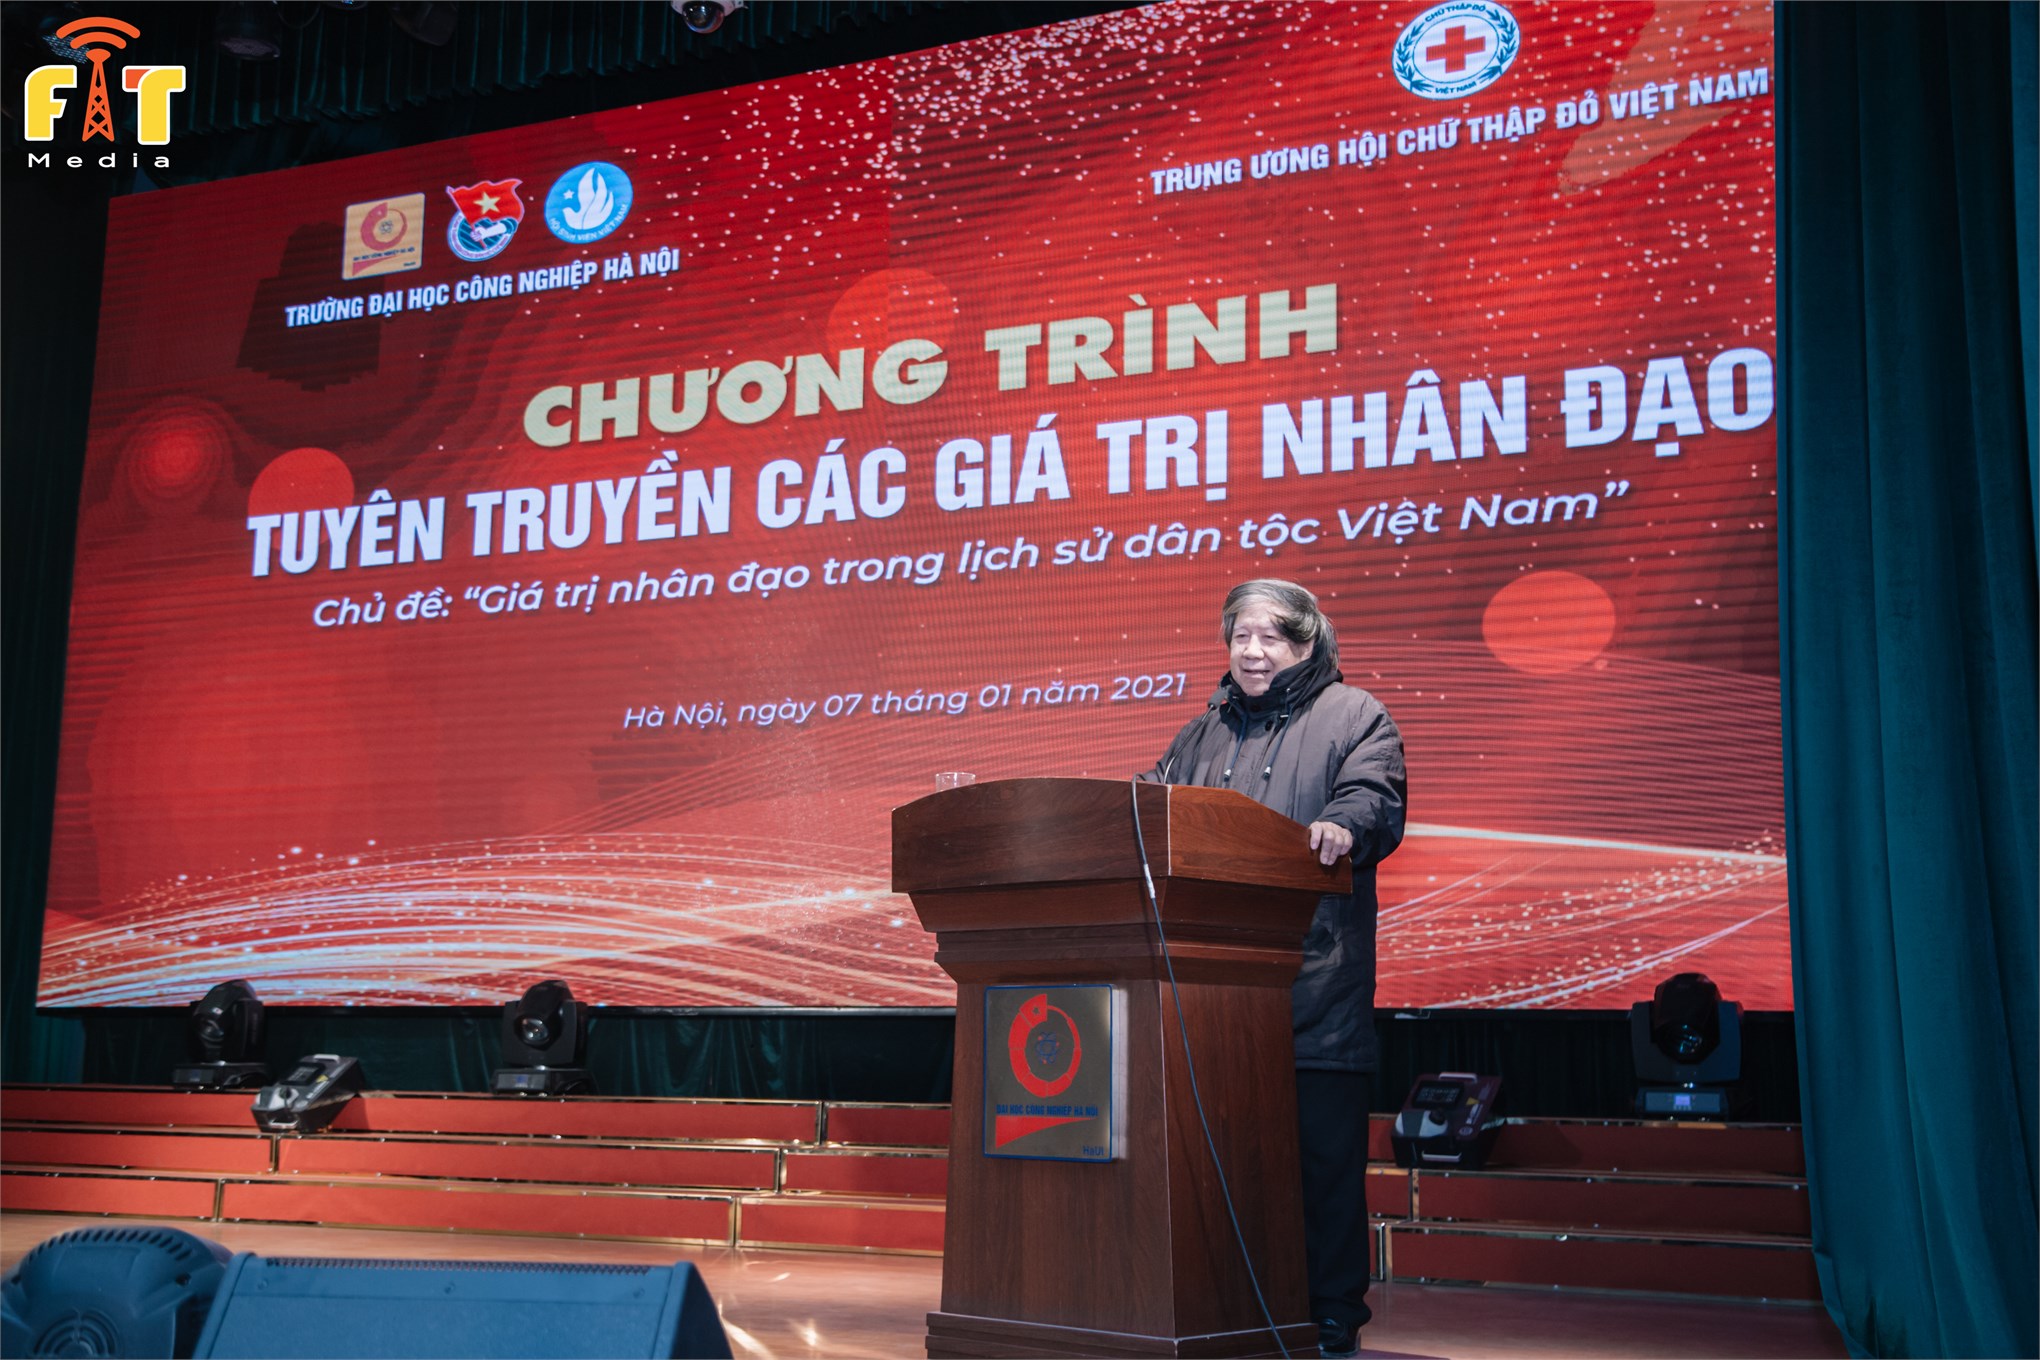 Tọa đàm “Giá trị nhân đạo trong lịch sử dân tộc Việt Nam”